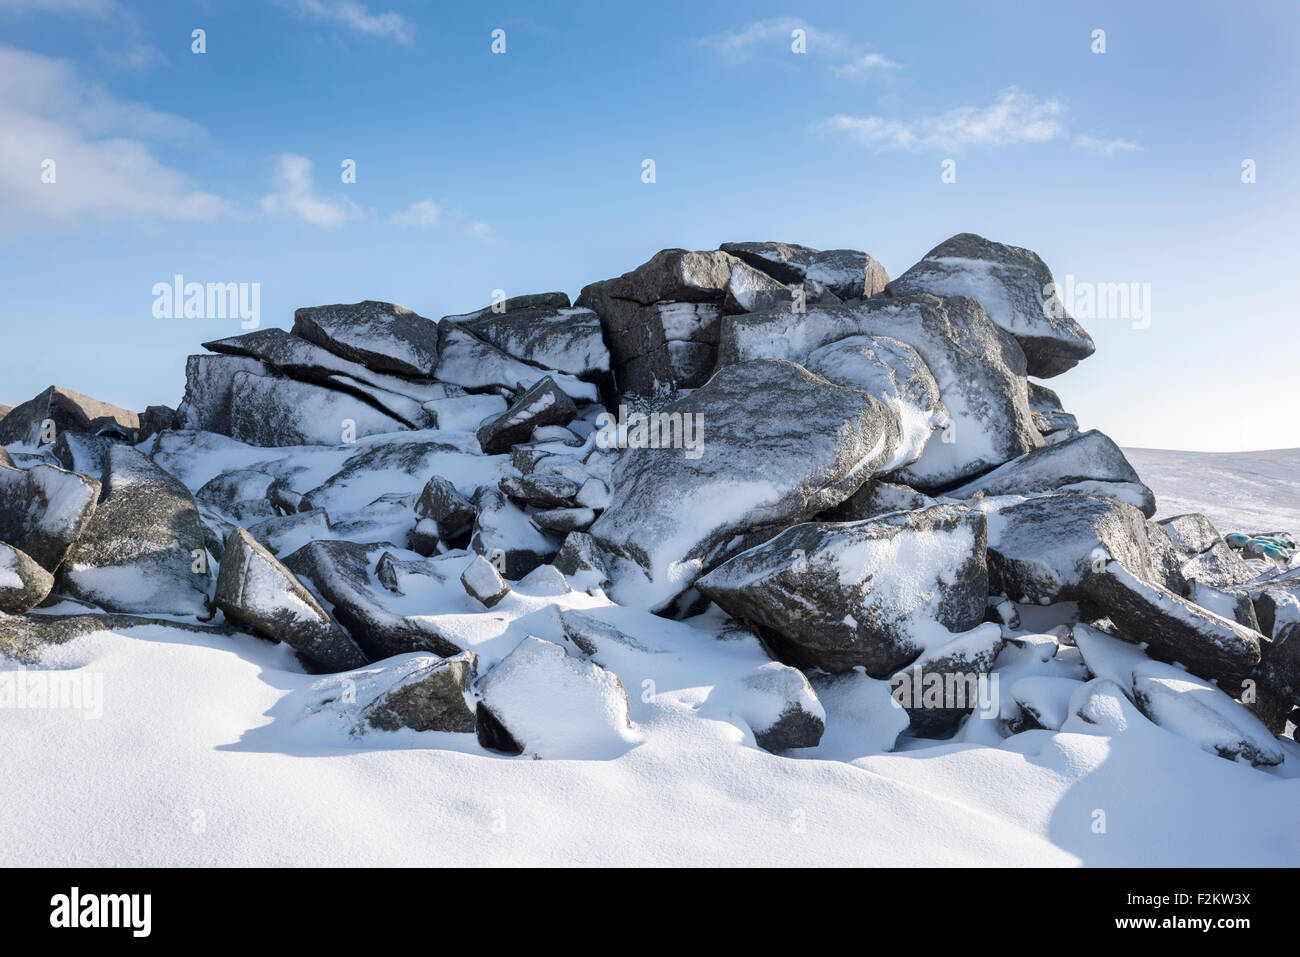 Frozen granite rocks in snow at Belstone Tor on Dartmoor, England. Stock Photo